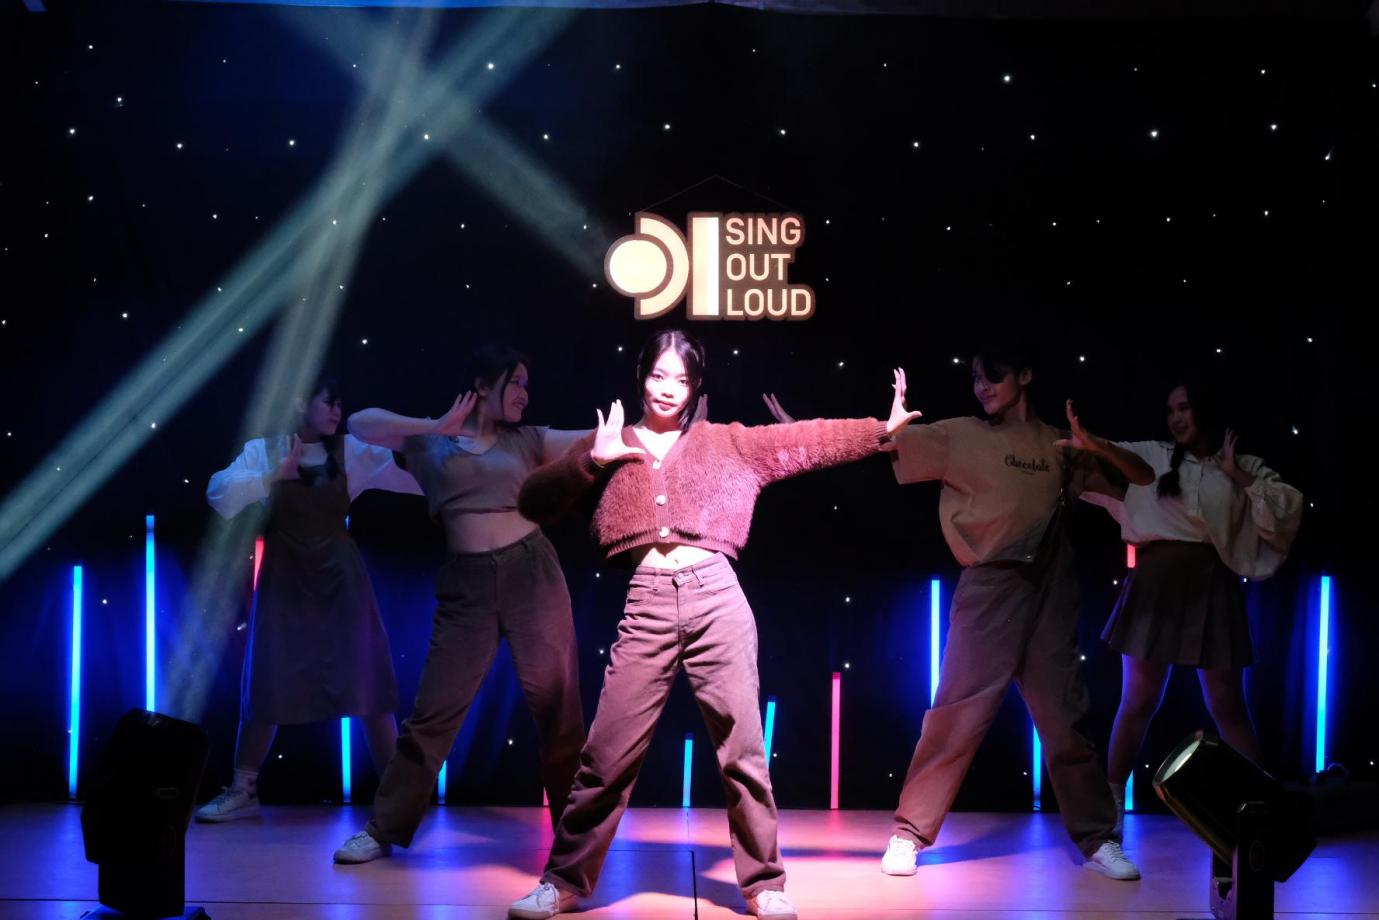 Quán quân, Á quân The Voice Kids bất ngờ xuất hiện tại đêm chung kết khu vực Sing Out Loud trong vai trò thí sinh - Ảnh 3.